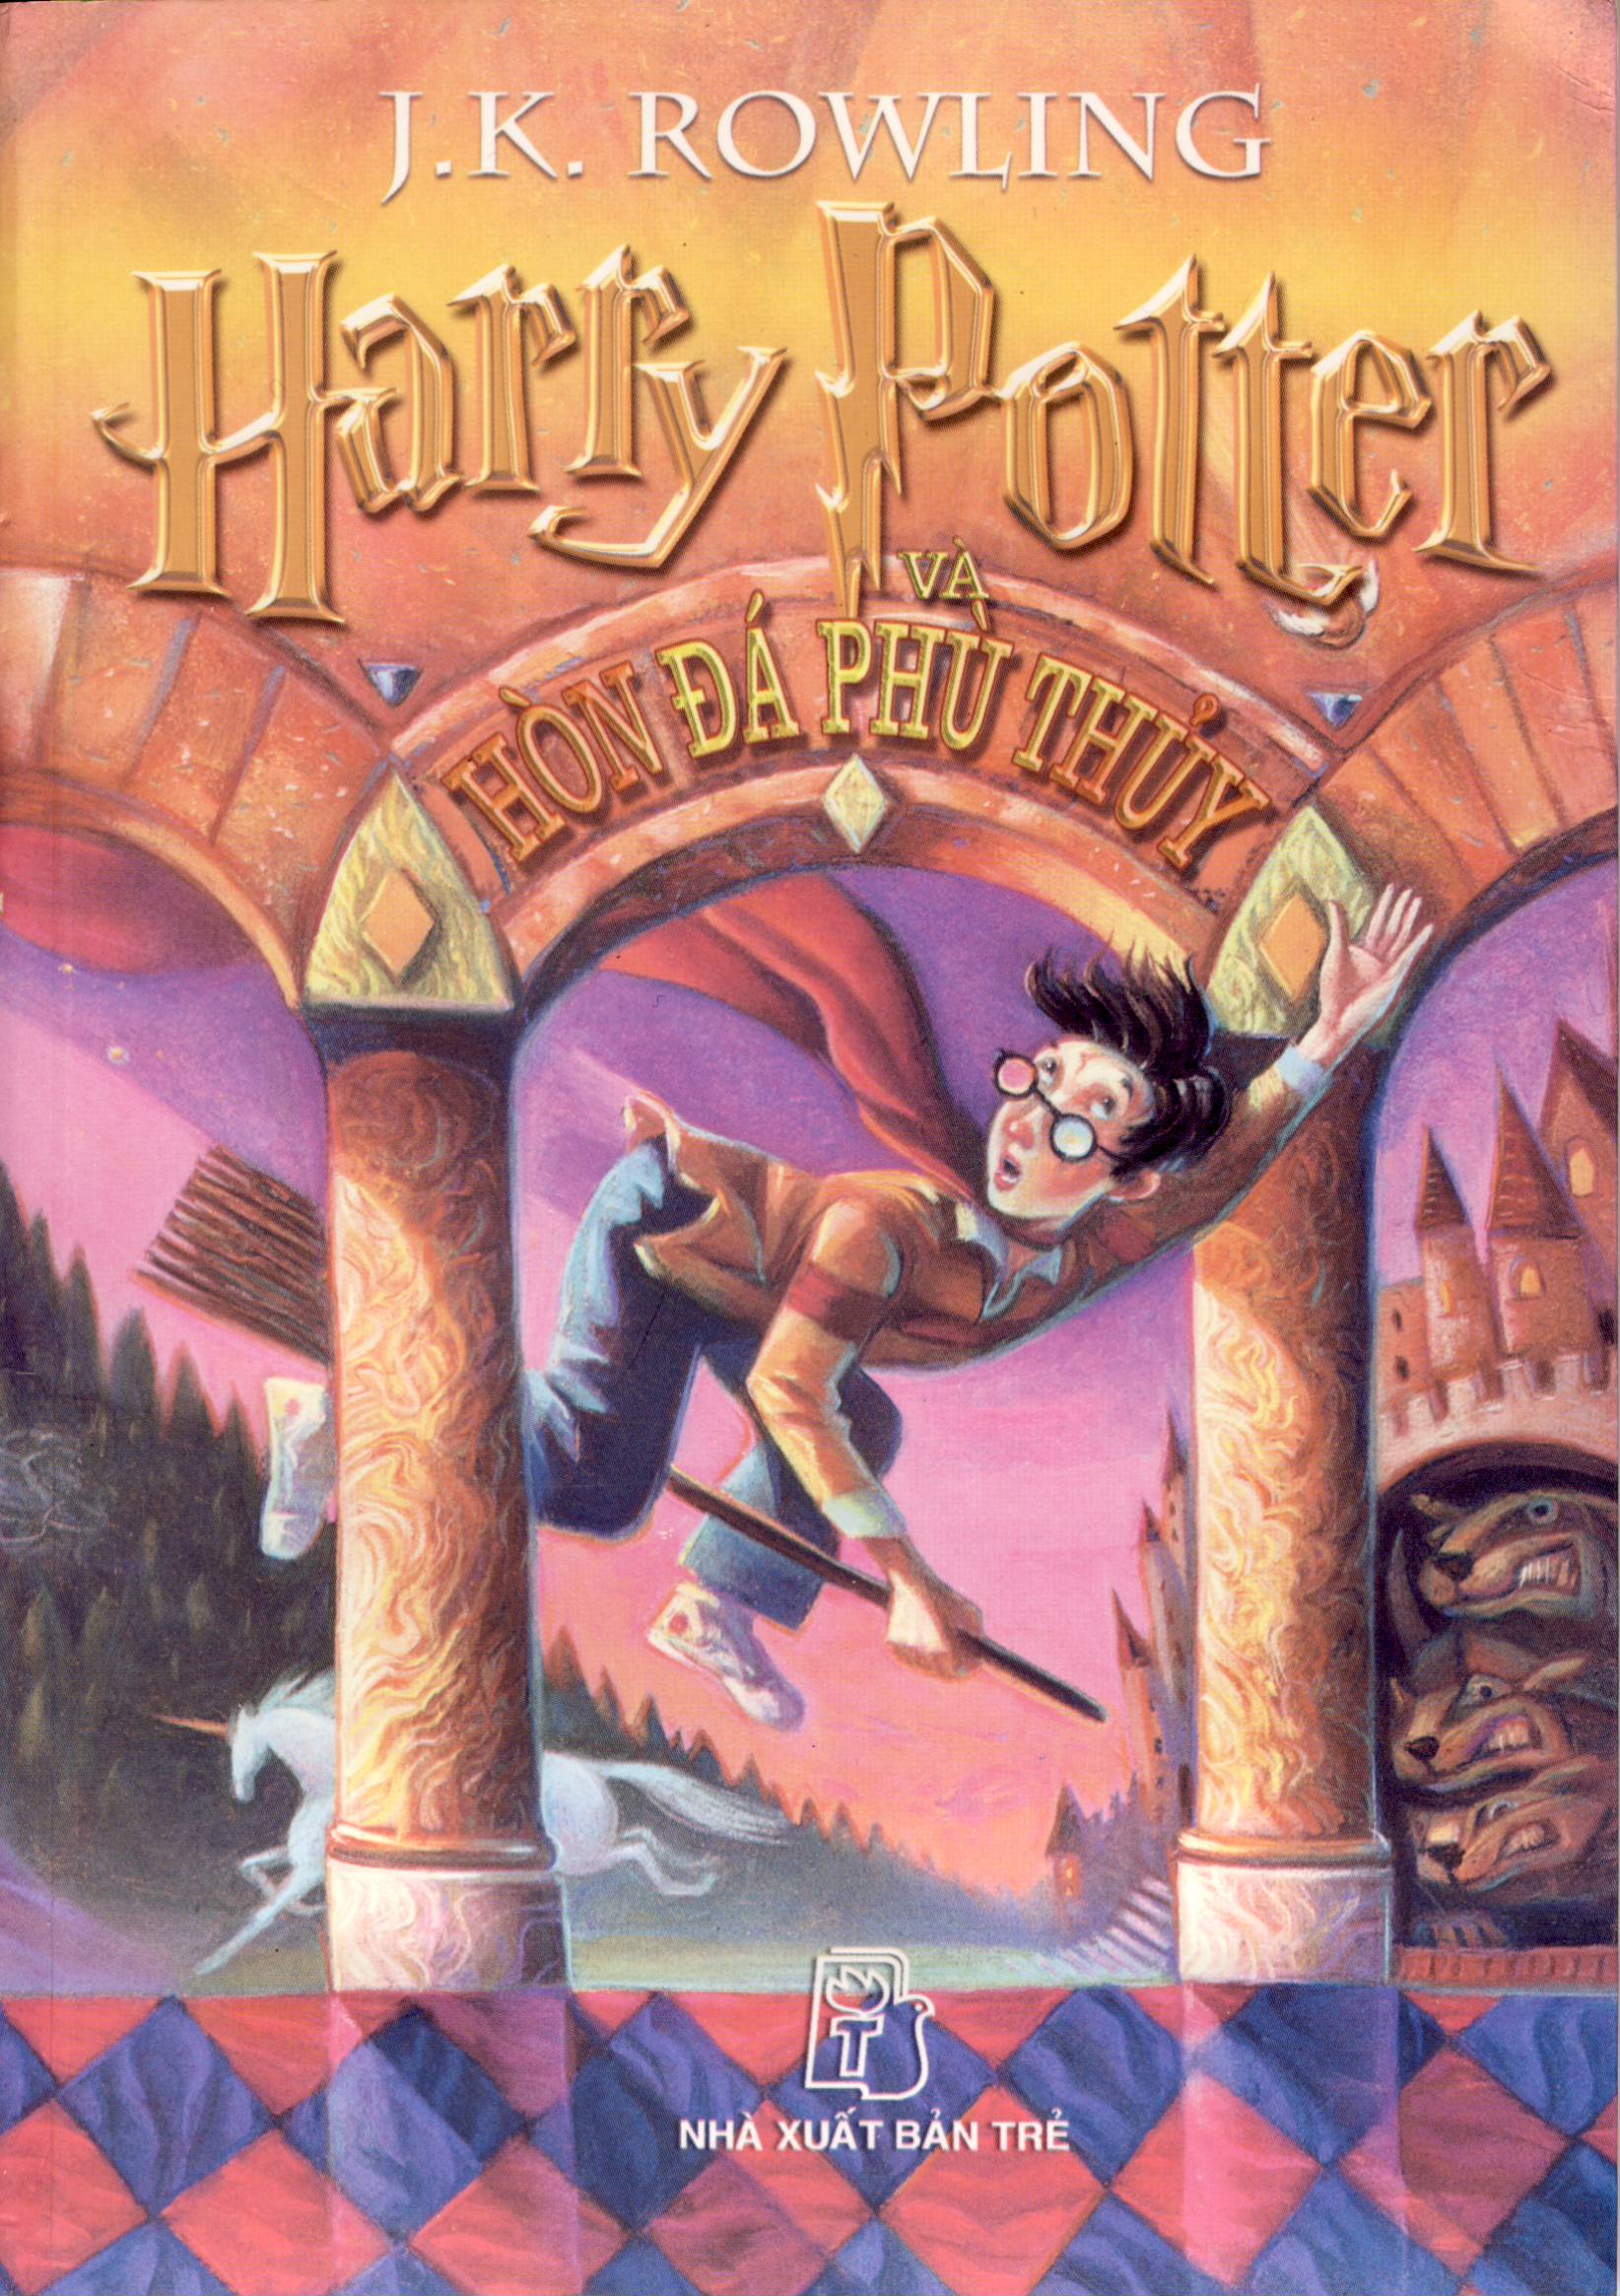 Wiki Harry Potter VN: Bạn yêu thích thế giới ma thuật của Harry Potter? Chúng tôi sẽ cung cấp cho bạn những thông tin mới nhất về thế giới phù thủy này thông qua Wiki Harry Potter VN. Hãy xem hình ảnh của chúng tôi để có được cái nhìn sơ lược về những bí mật đang chờ bạn khám phá.